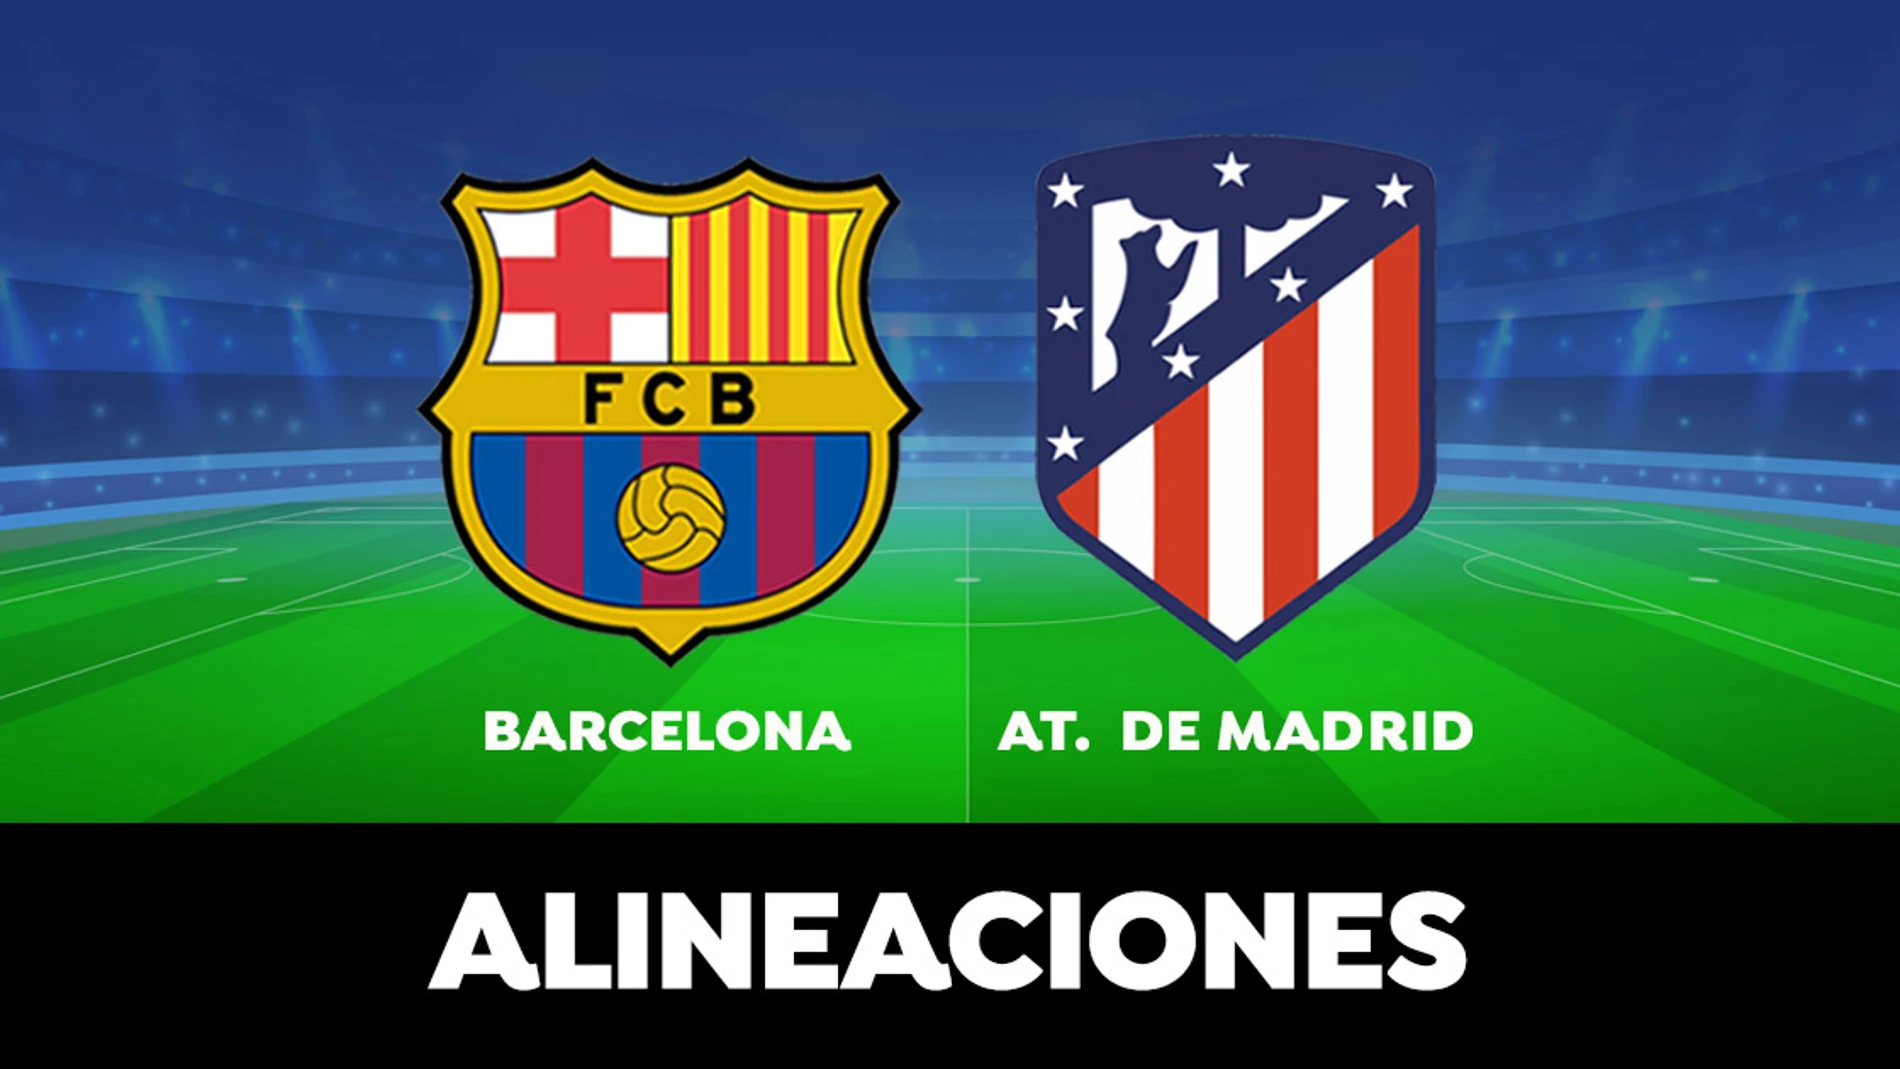 Barcelona - Atlético de Madrid: Alineaciones del partido de la Liga Santander en directo